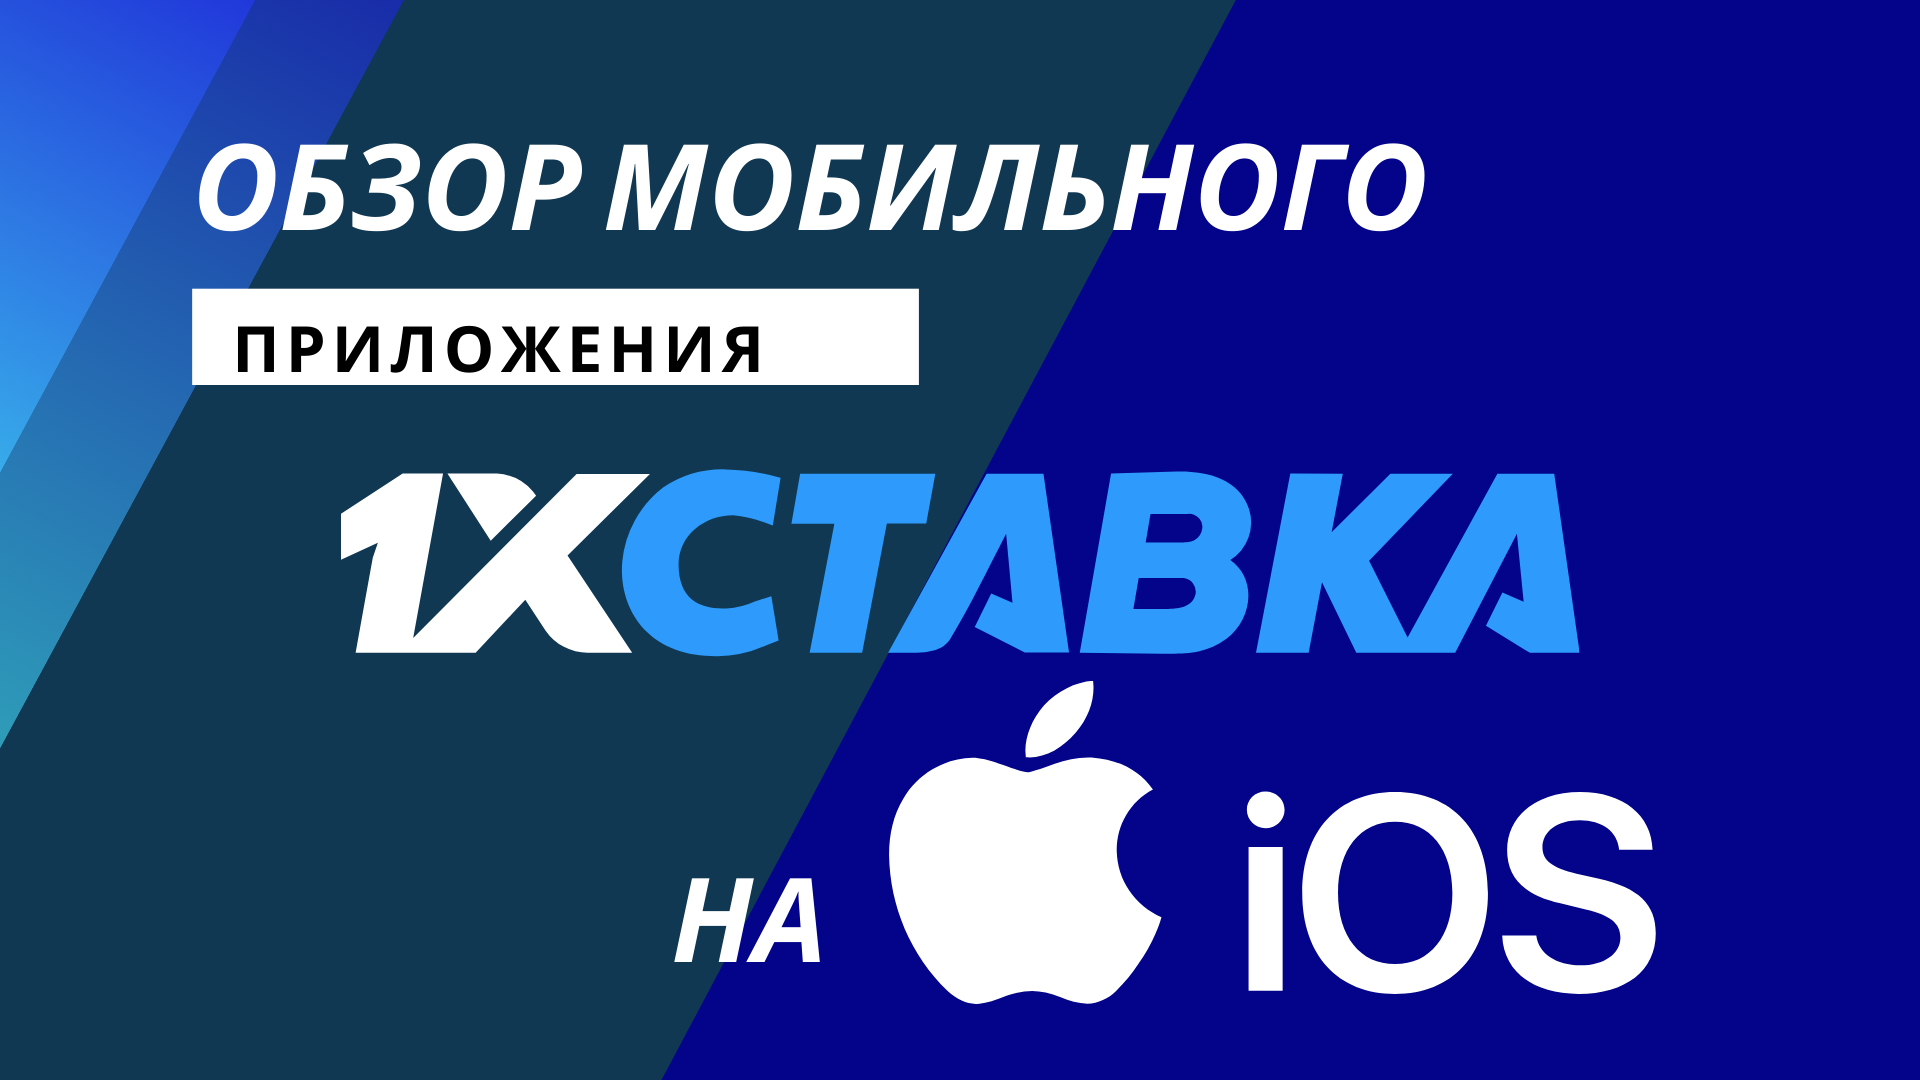 Телеграмм скачать на айфон бесплатно на русском языке без регистрации фото 112